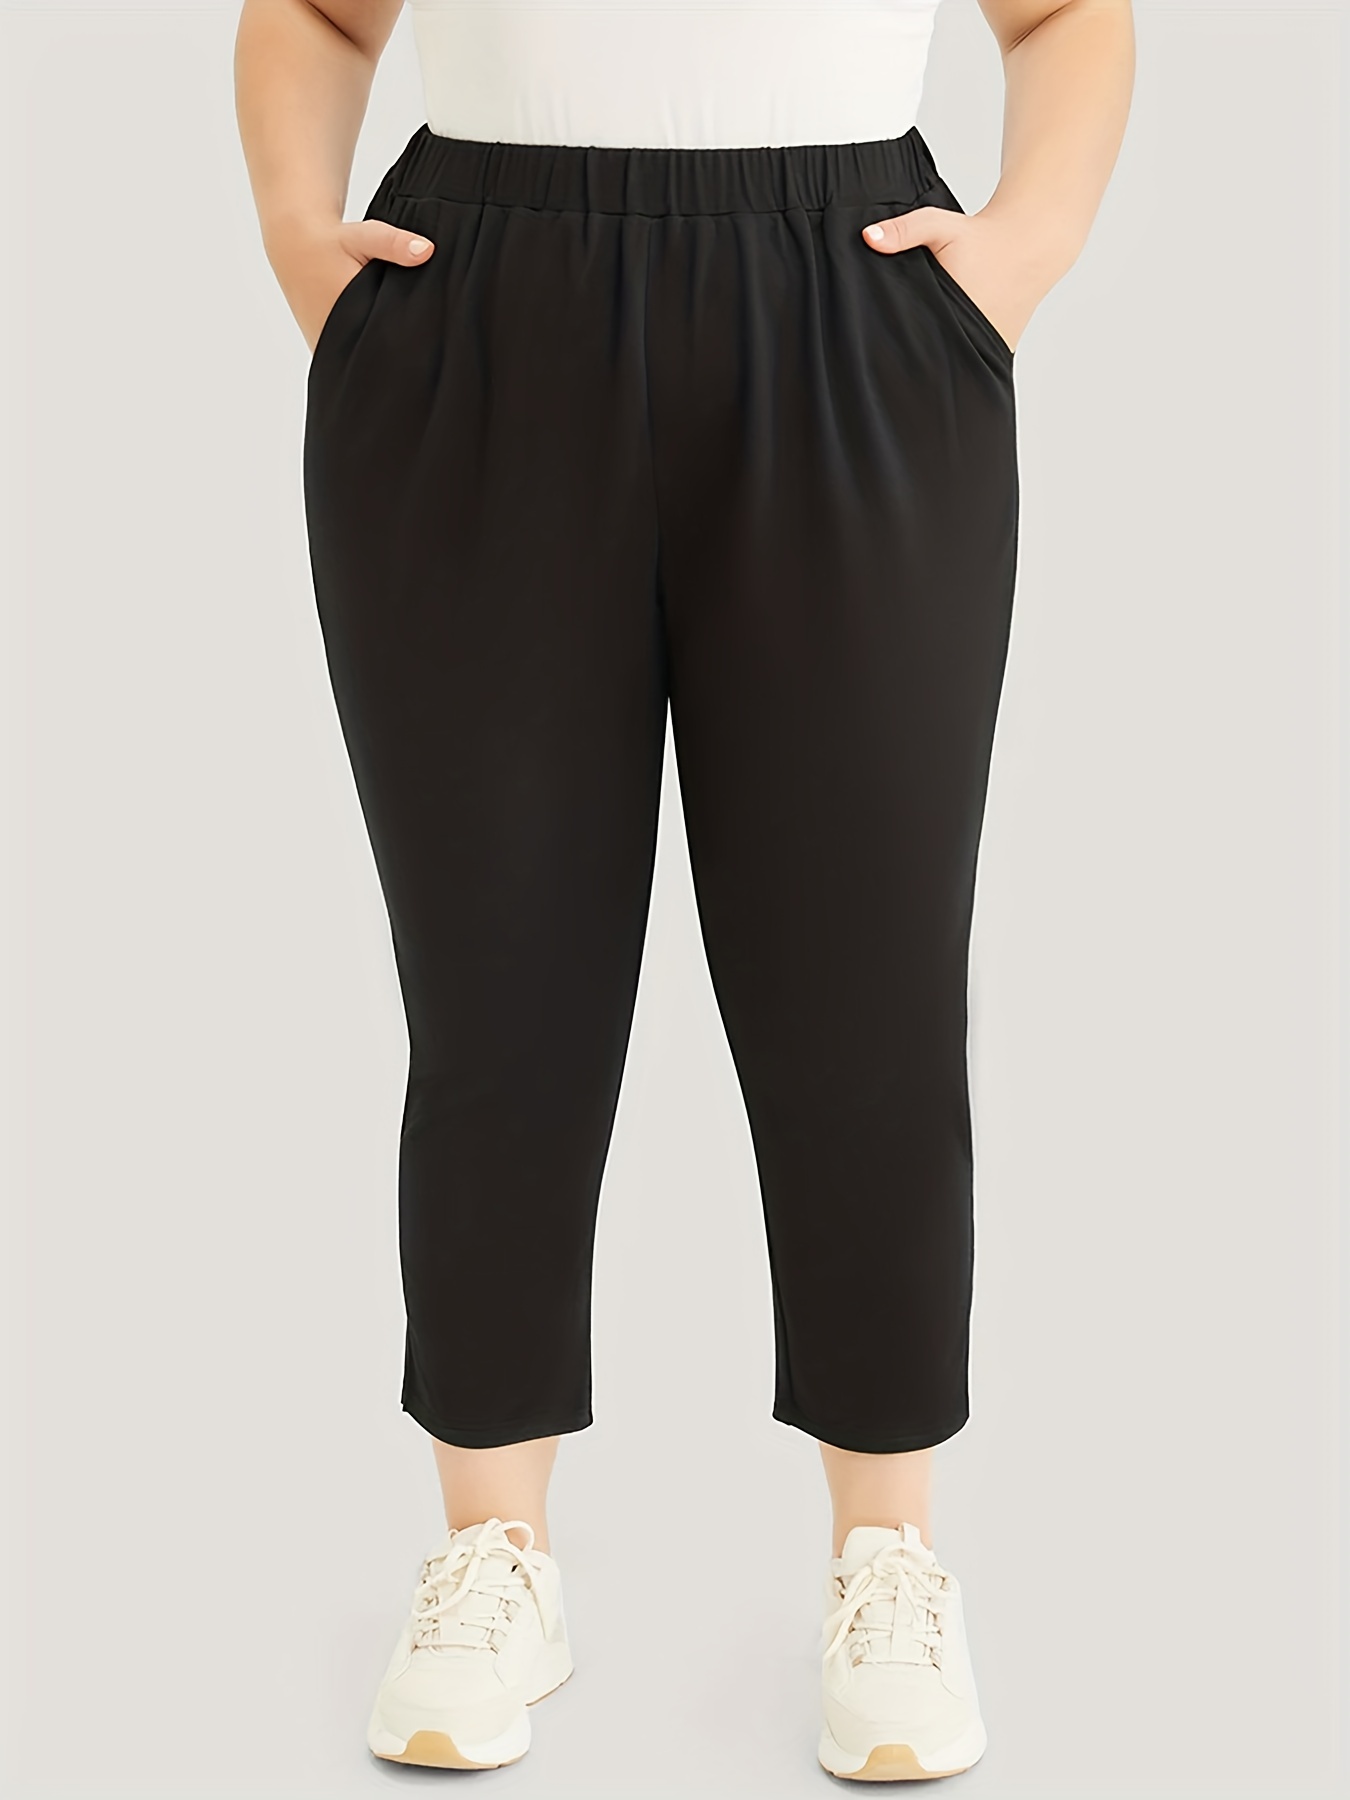 Plus Size Casual Capri Pants Women's Plus Solid Medium - Temu